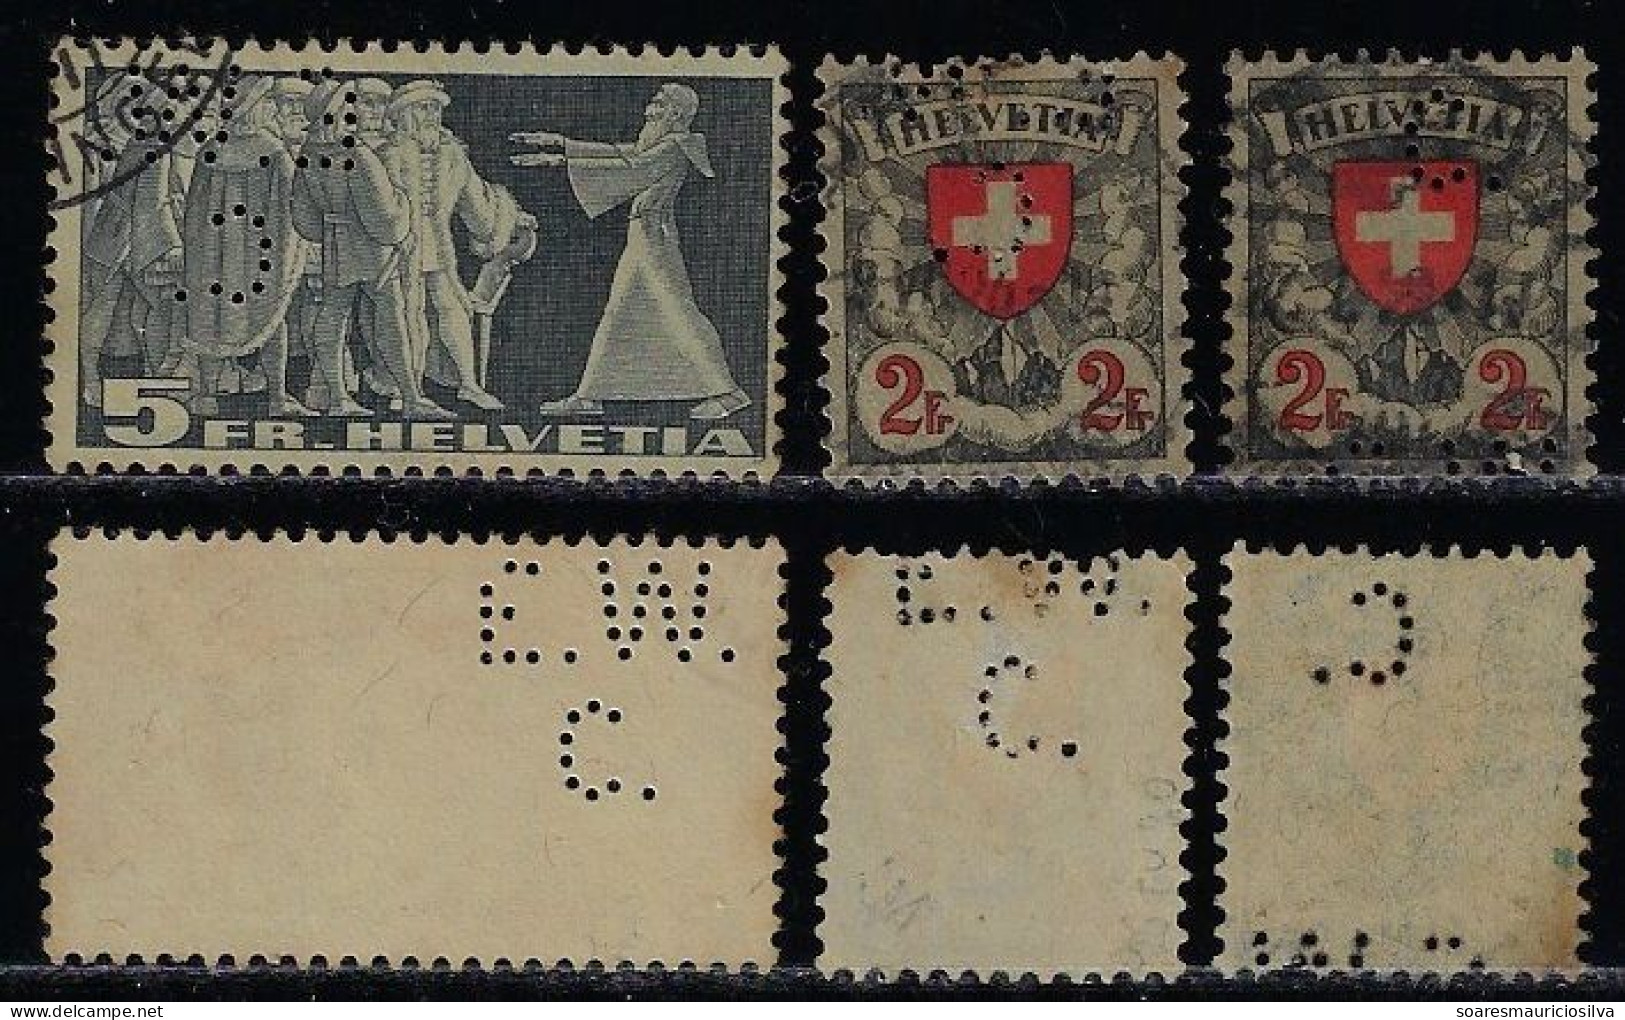 Switzerland 1894/1940 3 Stamp With Perfin E.W./C. By Escher-Wyss & Co Machine Factory In Zurich Lochung Perfore - Perforadas